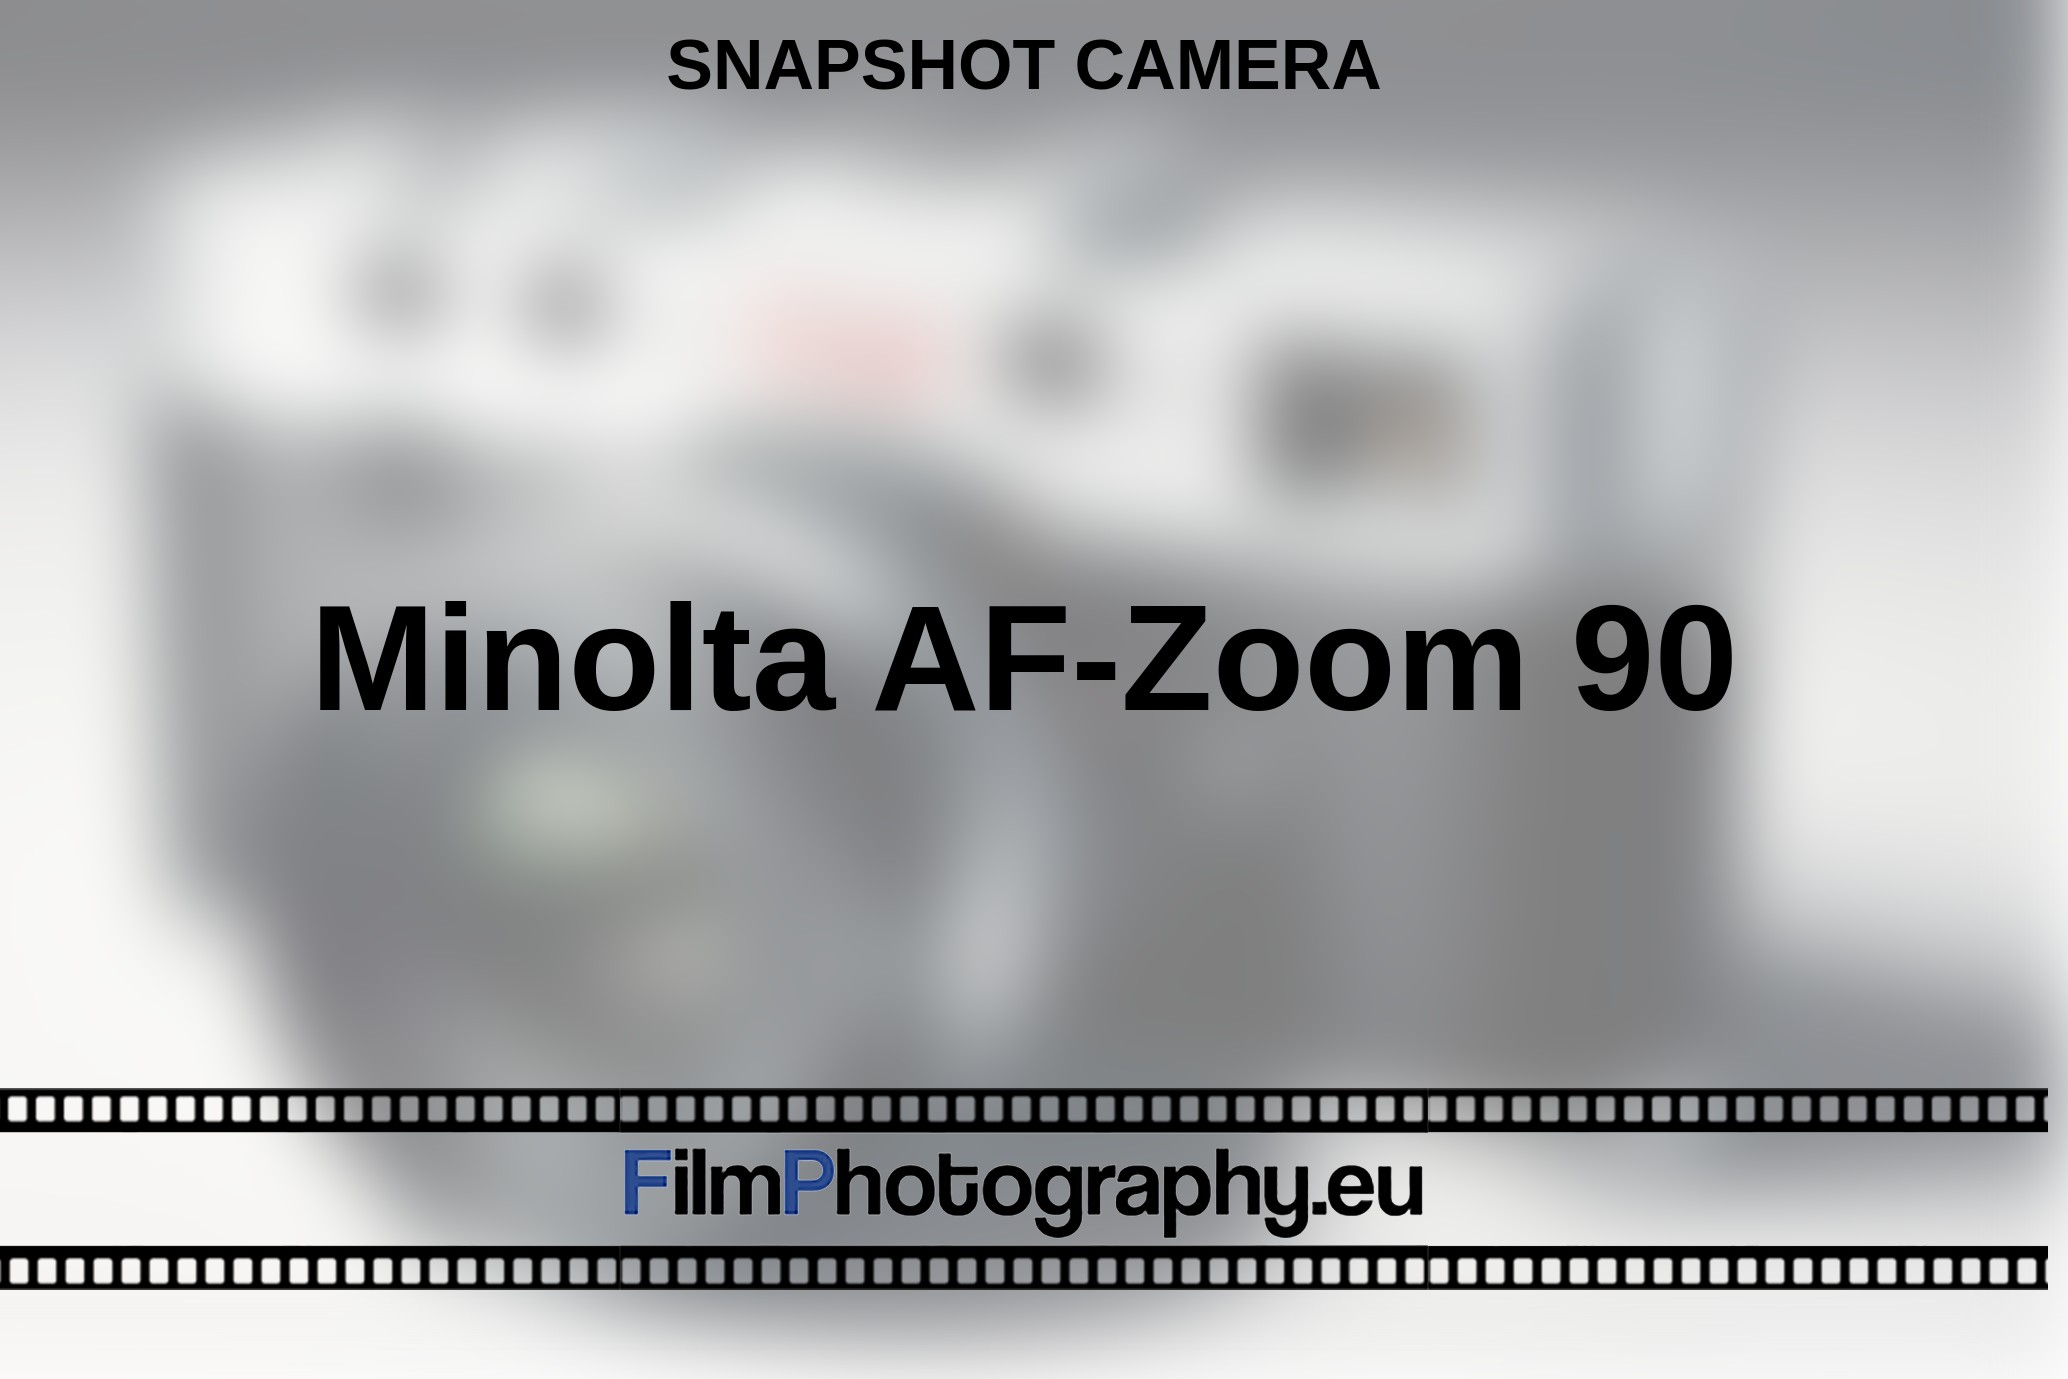 Minolta-AF-Zoom-90-snapshot-camera-bnv.jpg